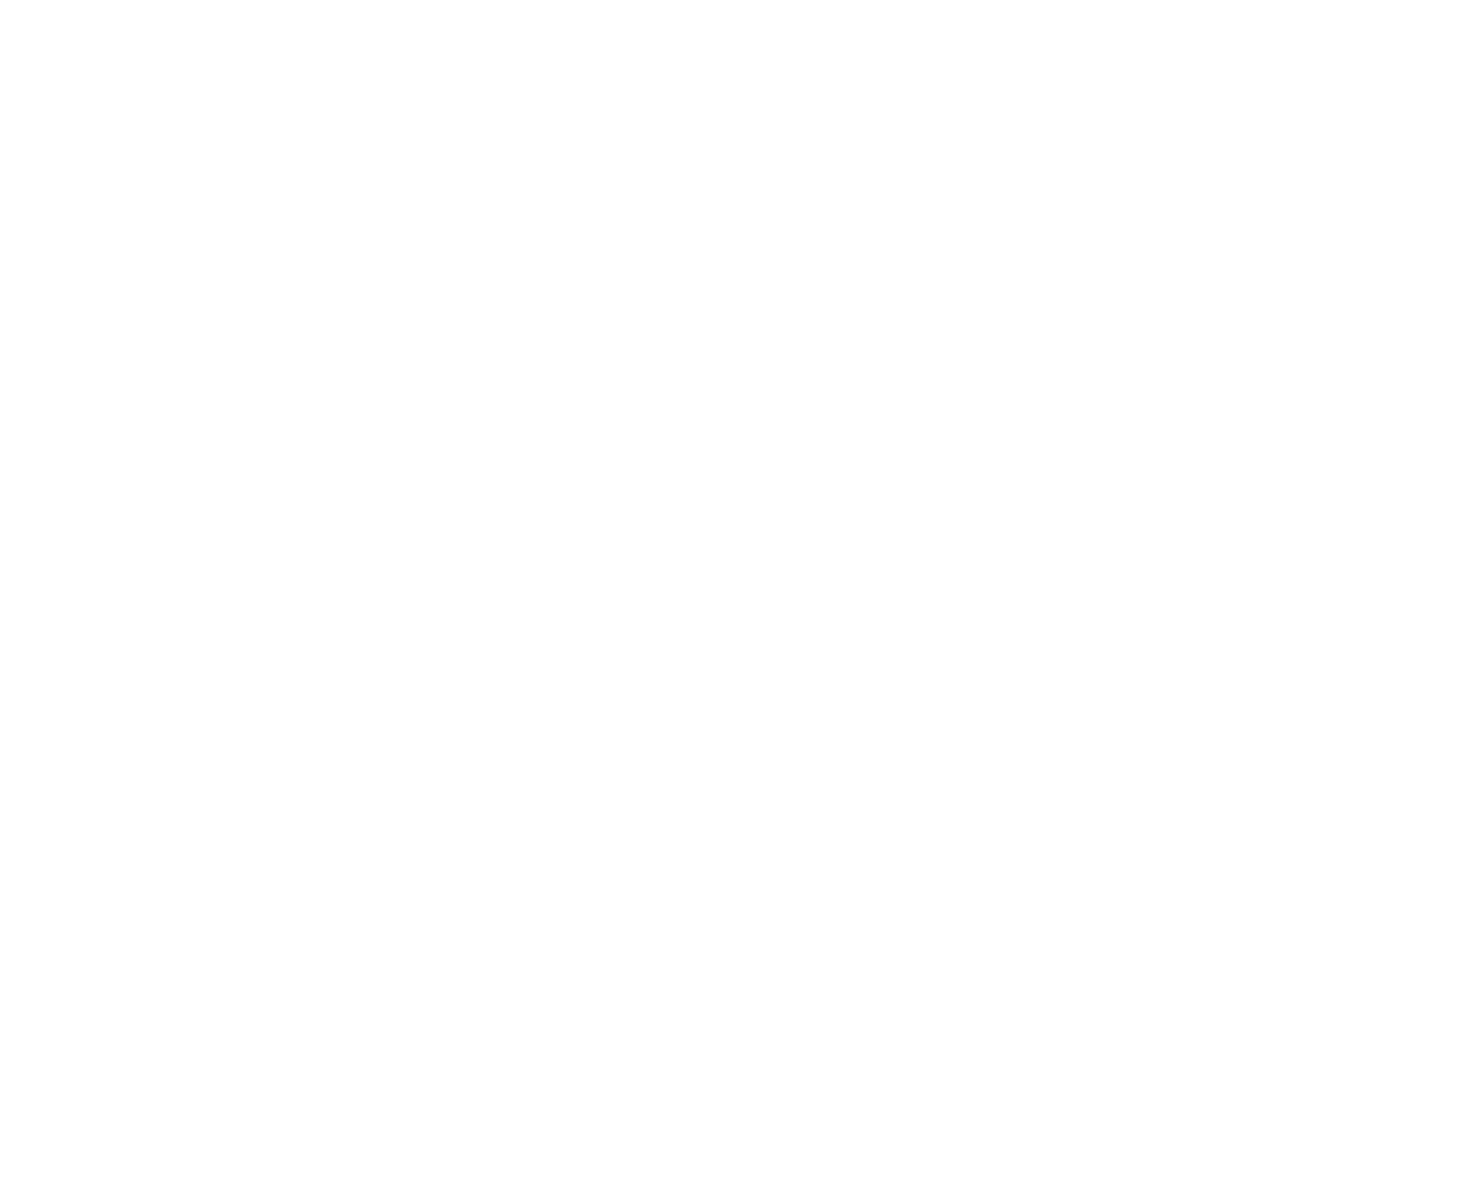 Ella's Umbrella white logo